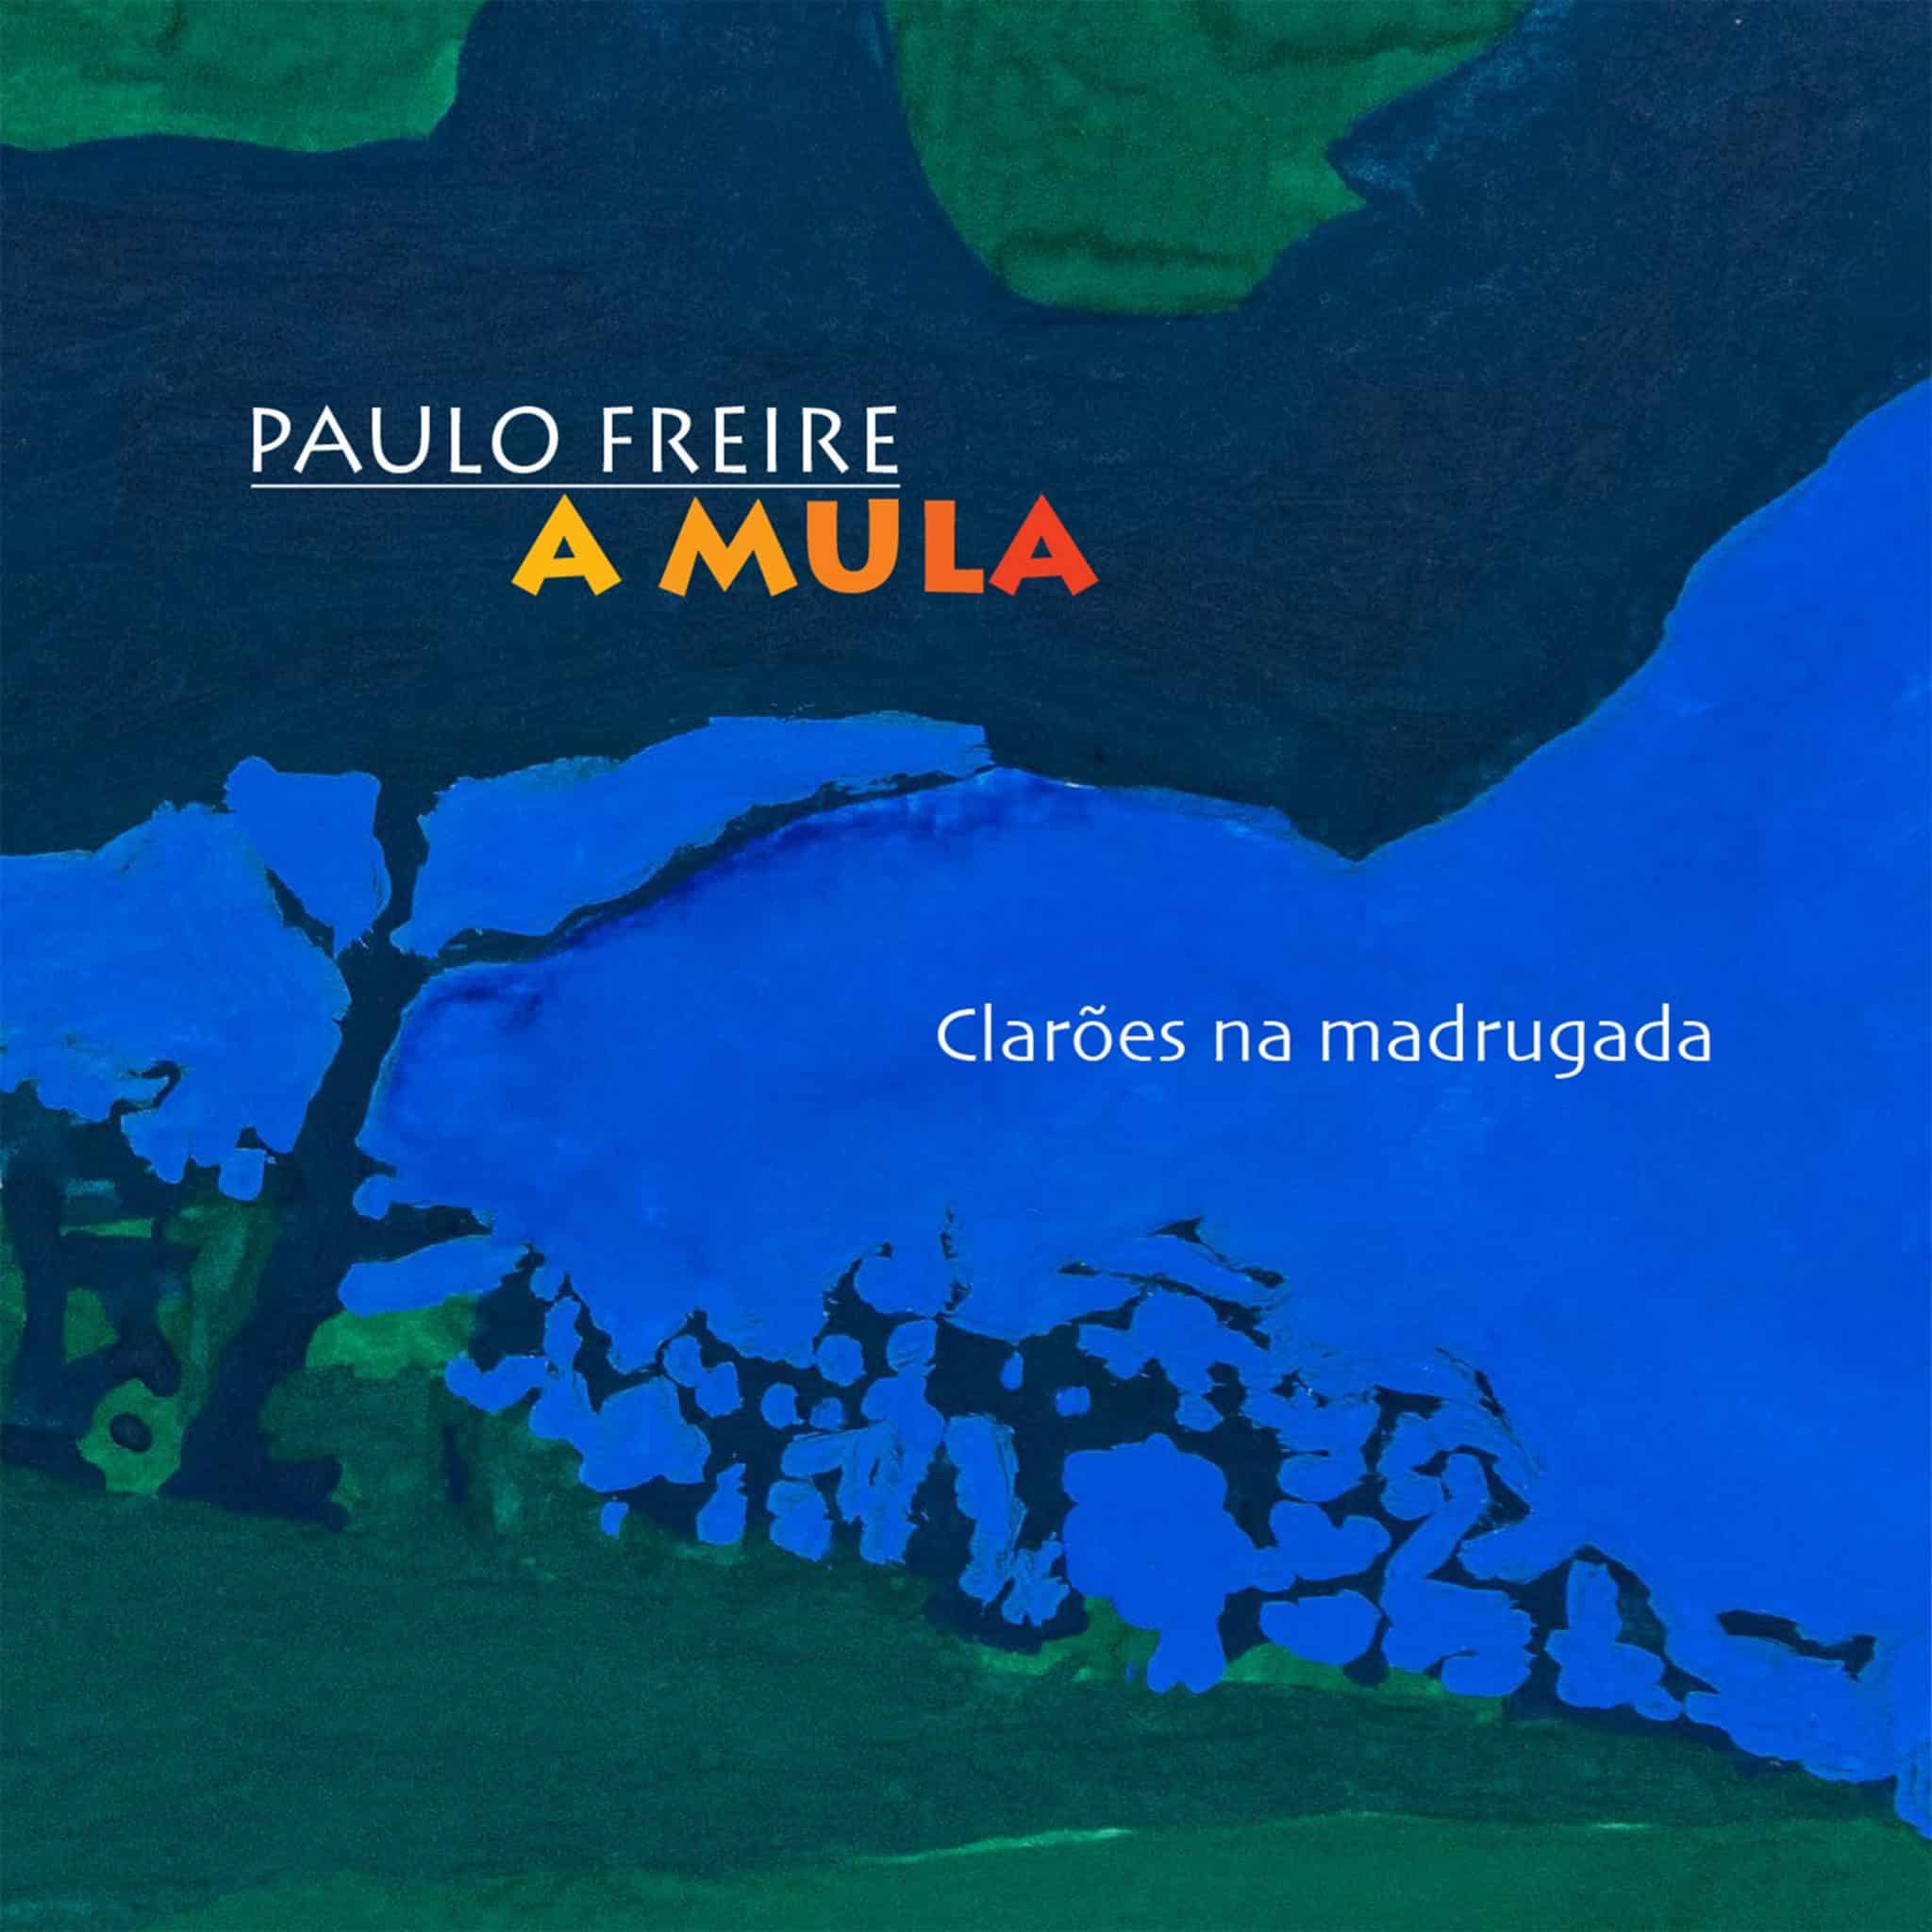 revistaprosaversoearte.com - Paulo Freire lança single 'Clarões da madrugada'